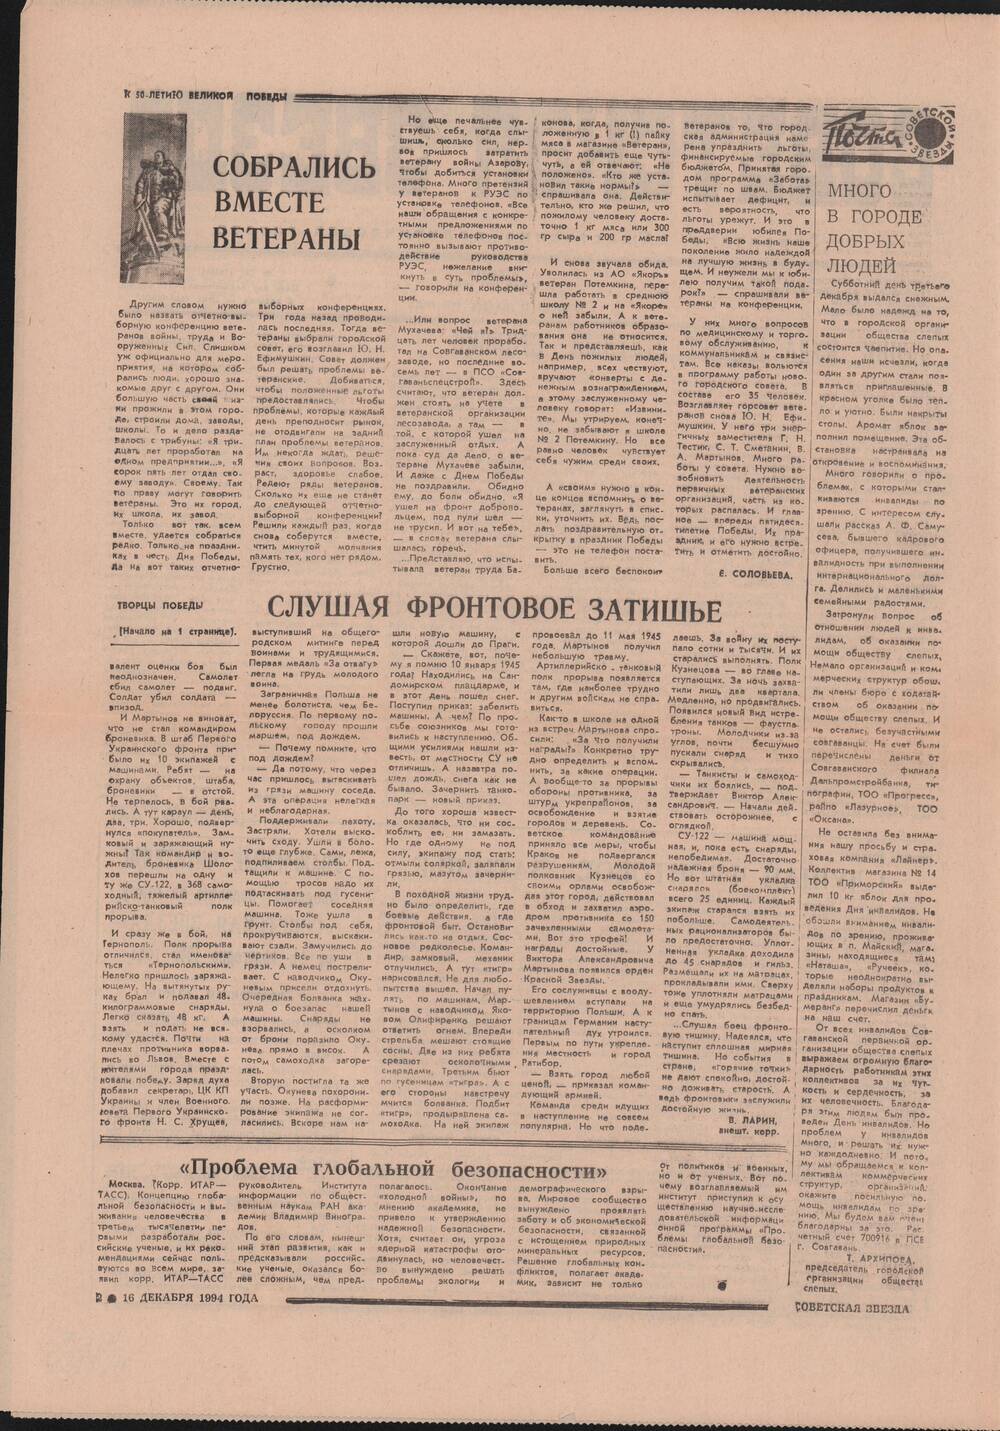 Газета «Советская звезда» № 241(14490) от 20.12.1994 под рубрикой «50 лет Великой Победы».